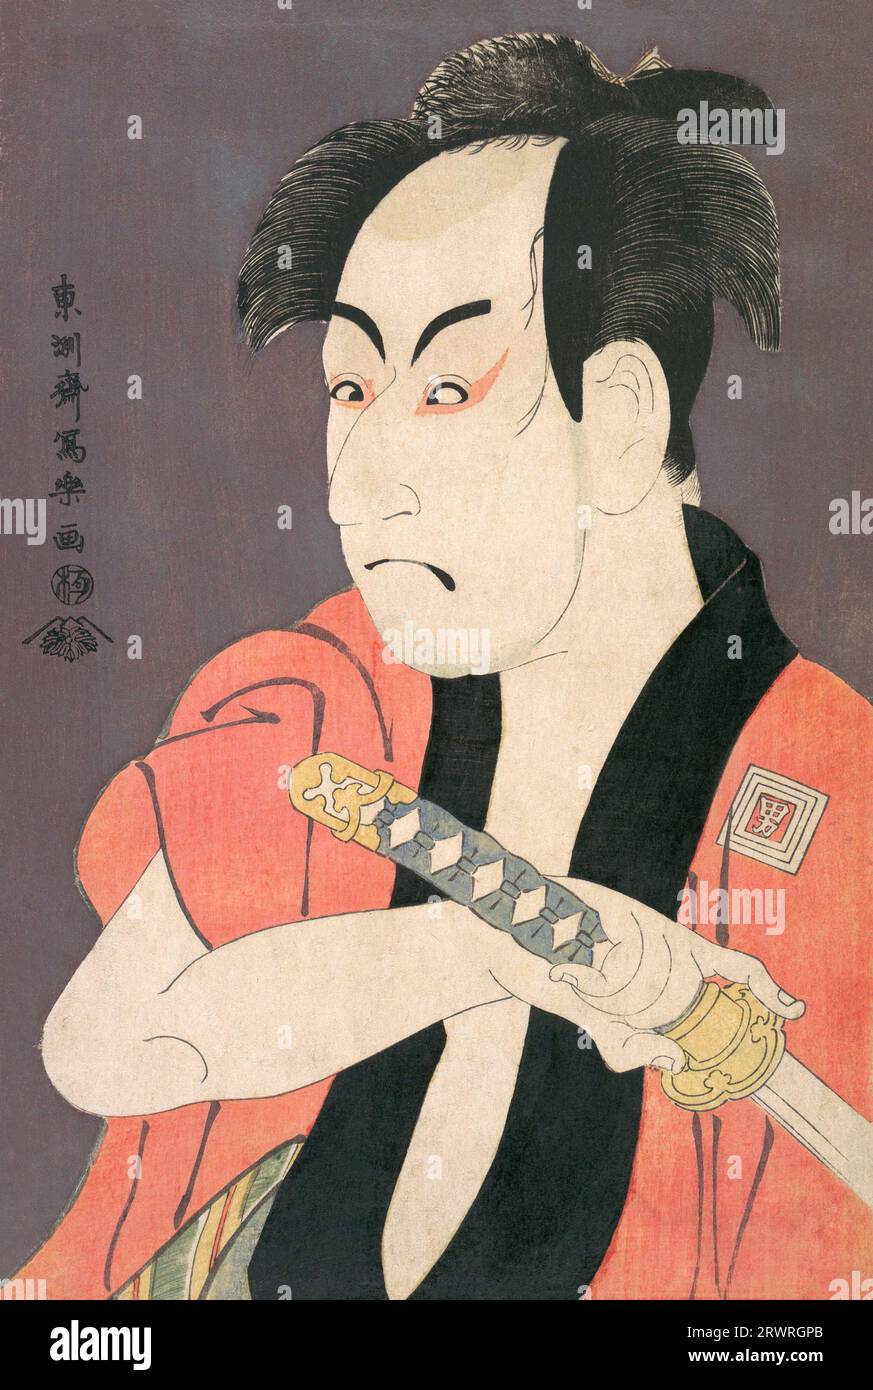 Giappone: Attore Kabuki Ichikawa Omezou nel ruolo di Yakko Ippei. Ukiyo-e Woodblock print di Toshusai Sharaku (1770 - 1825), c. 1794. Tōshūsai Sharaku è ampiamente considerato uno dei grandi maestri della stampa in blocchi di legno in Giappone. Poco si sa di lui, oltre alle sue stampe ukiyo-e; né il suo vero nome né le date della sua nascita o morte sono note con certezza. La sua carriera attiva come artista di blocchi di legno sembra aver attraversato solo dieci mesi nella metà del periodo Edo della storia giapponese, dalla metà del 1794 all'inizio del 1795. Foto Stock